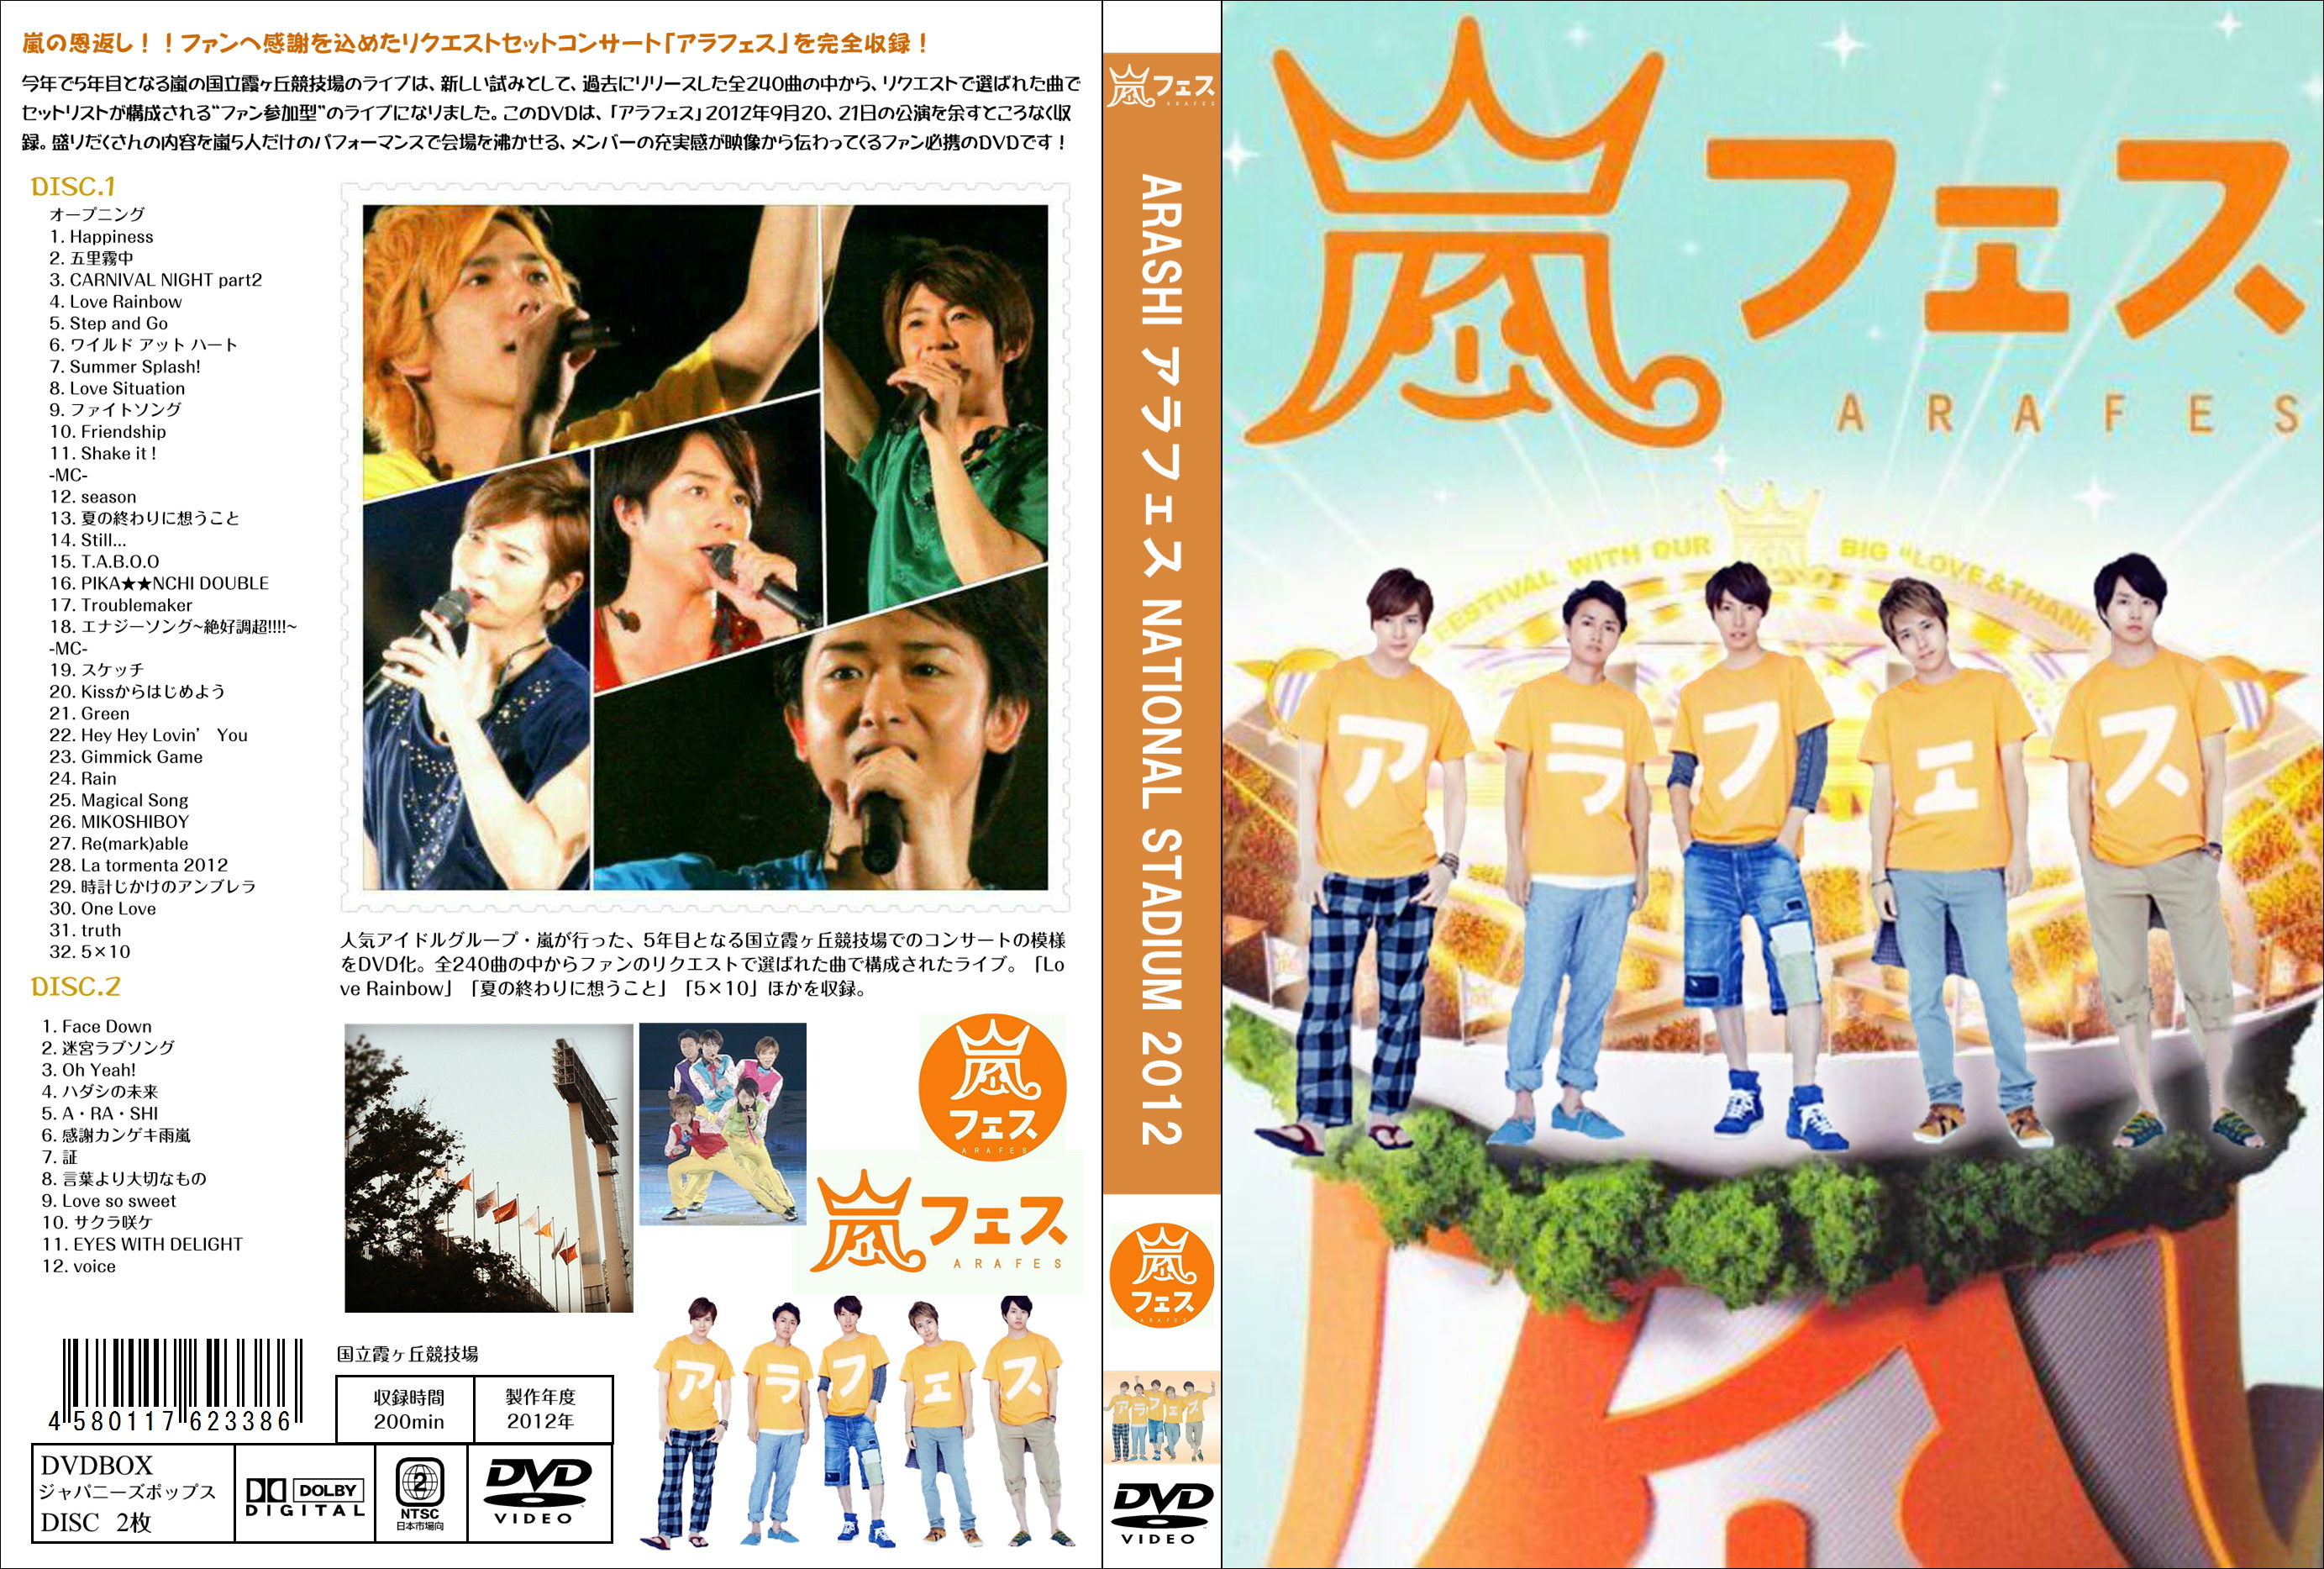 嵐 アラフェス 2012 2013 初回限定DVD 2枚セット - ミュージック